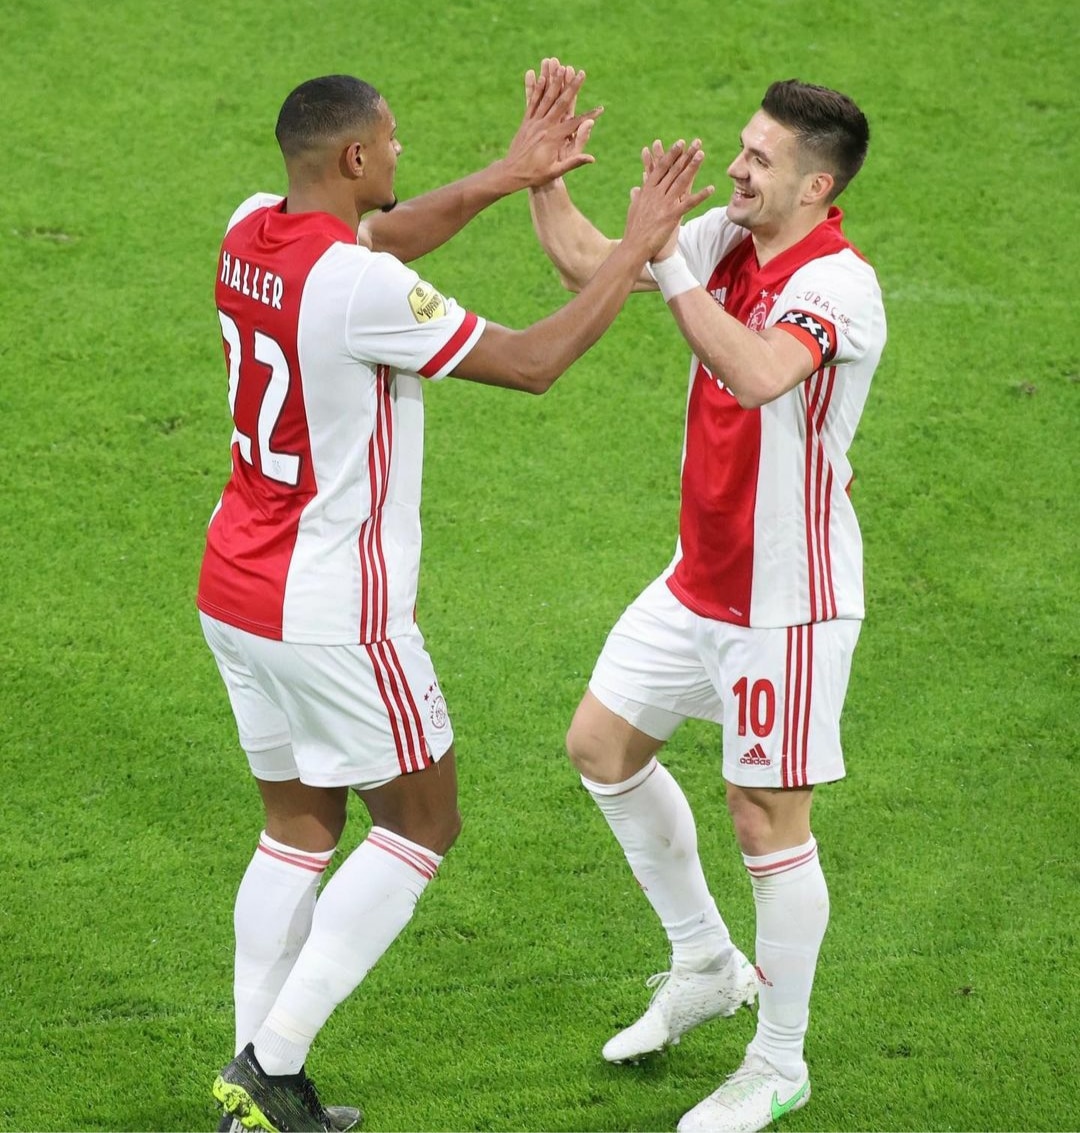 Ajax vence Sparta Rotterdam e mantém vantagem na liderança do Holandês